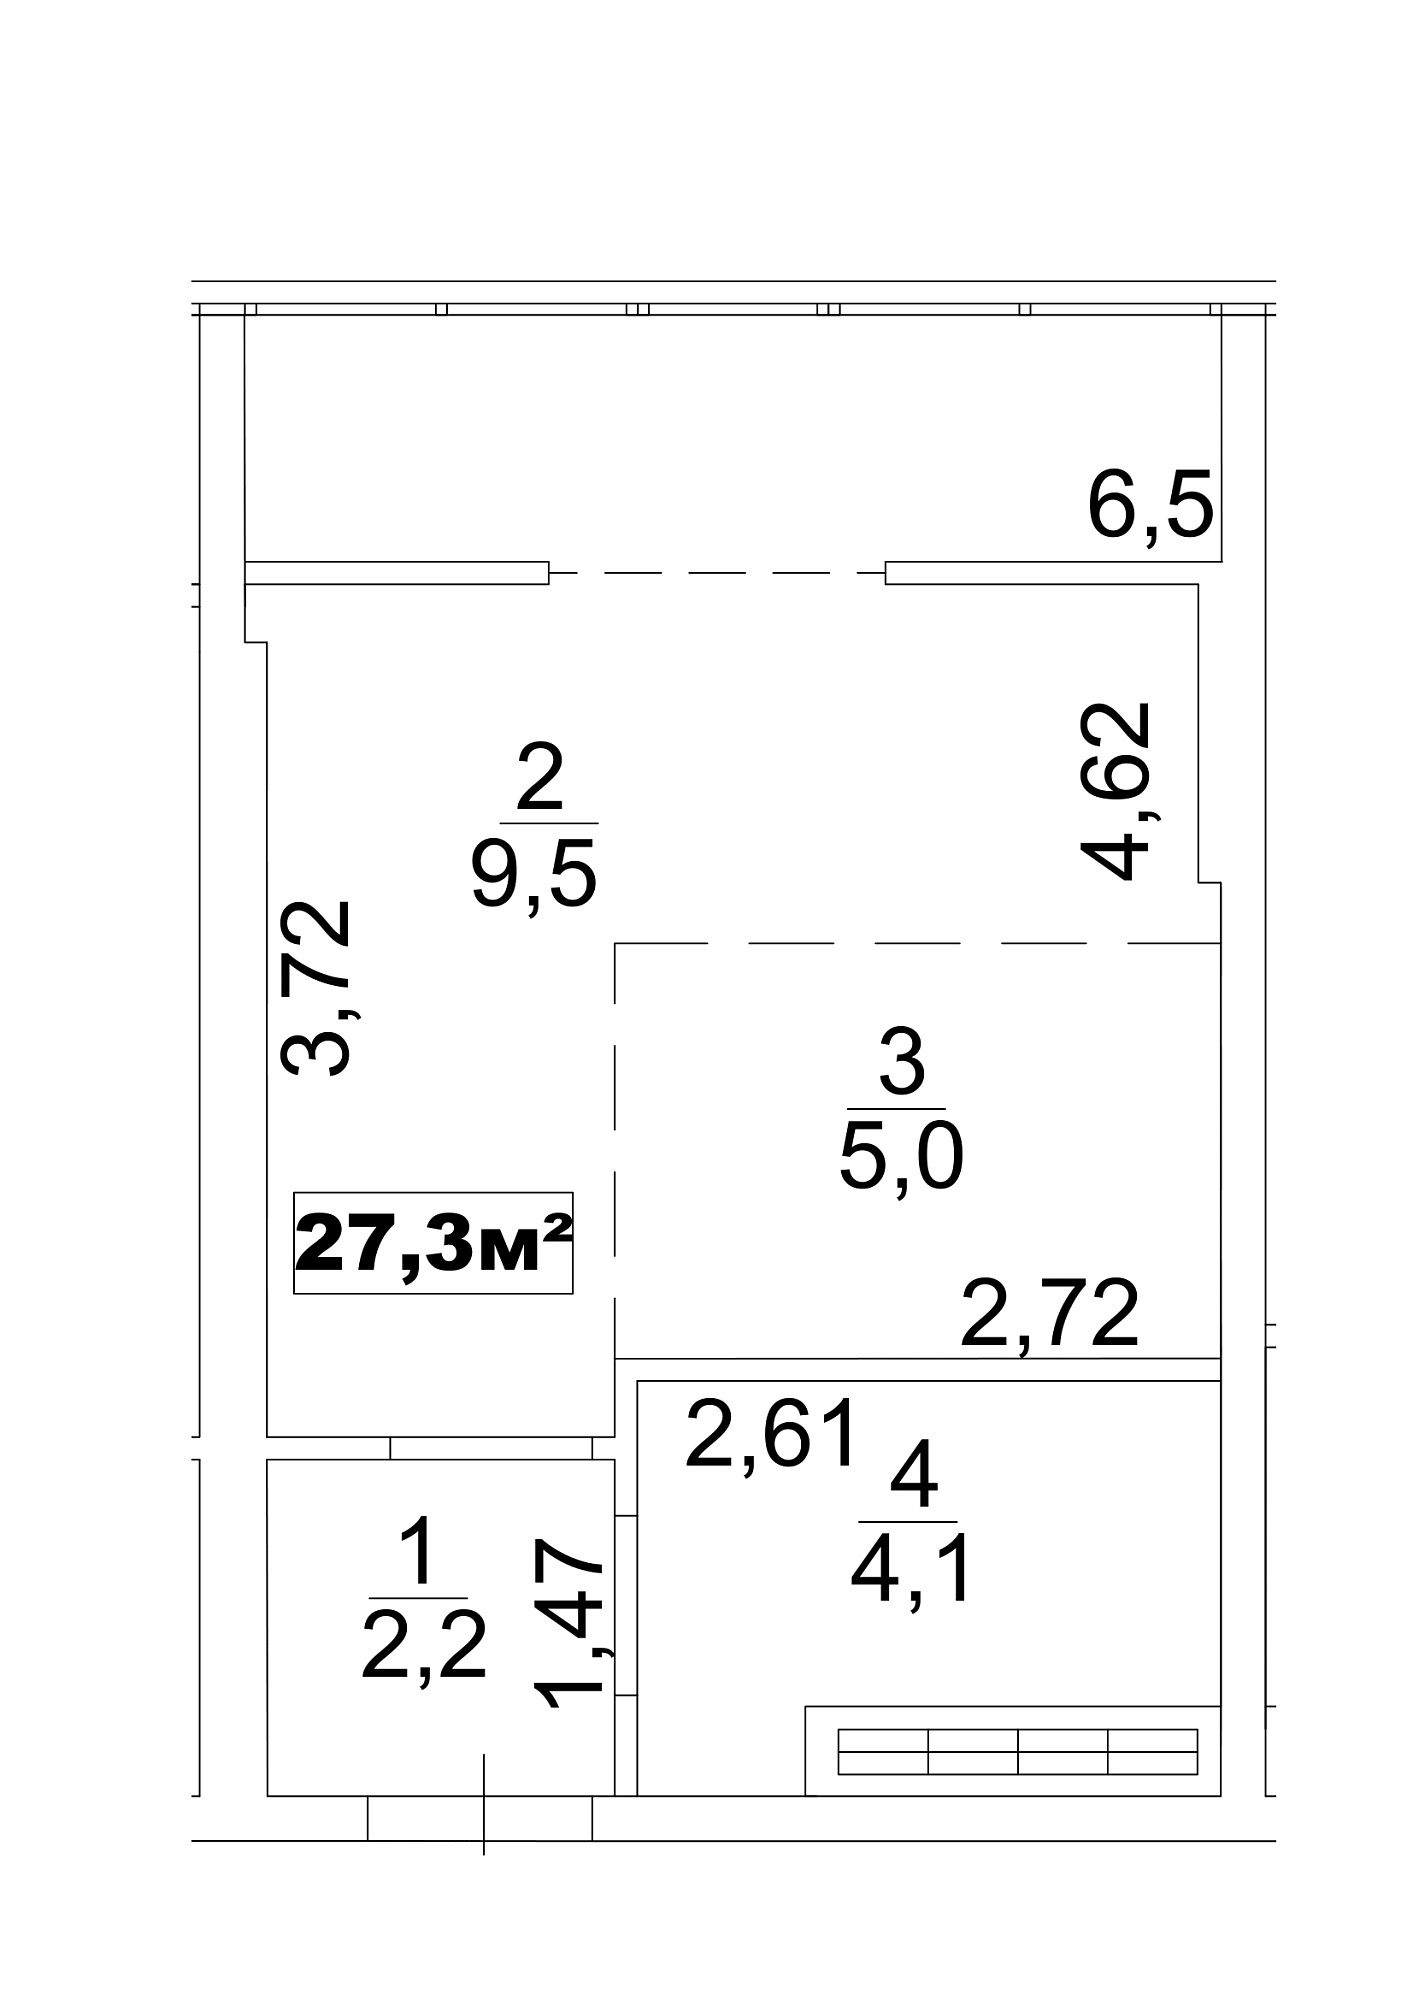 Планування Smart-квартира площею 27.3м2, AB-13-10/0081в.